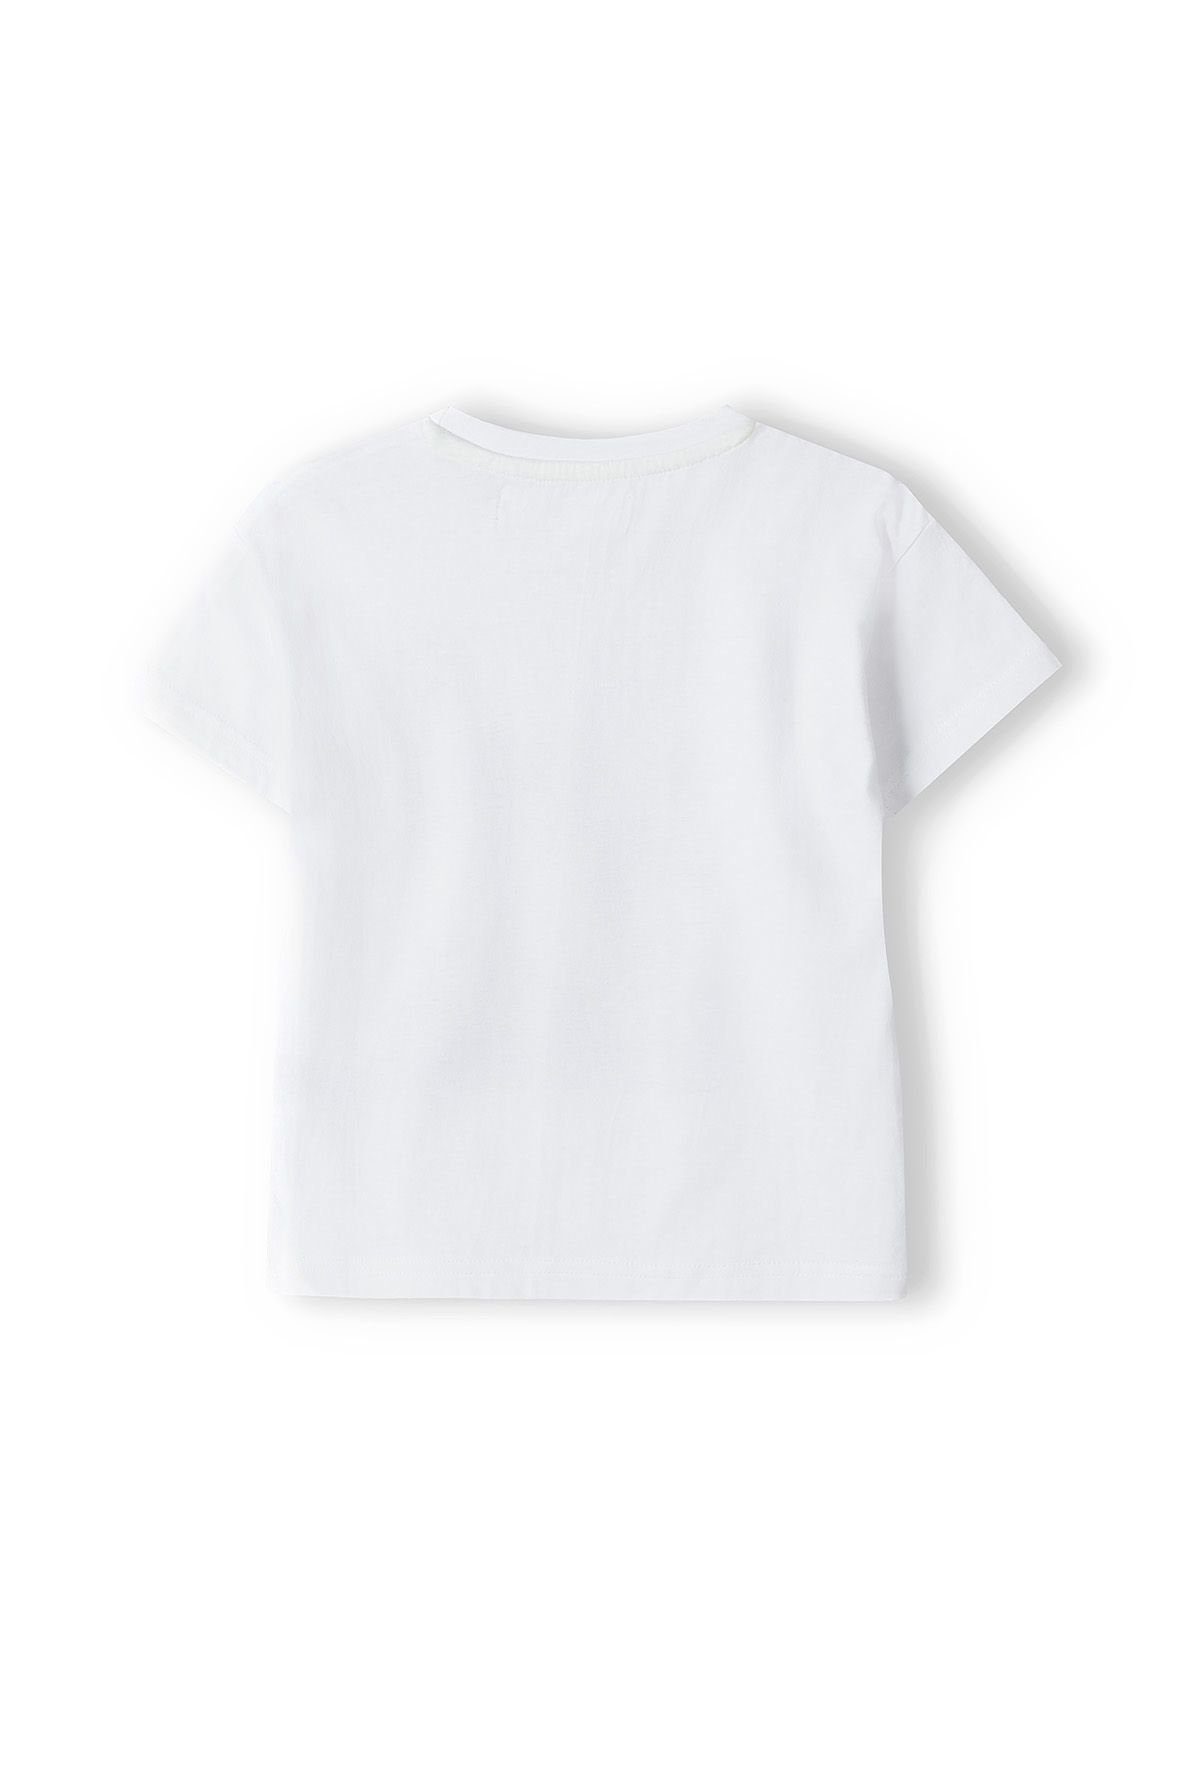 T-Shirt Weiß (3y-14y) MINOTI T-Shirt